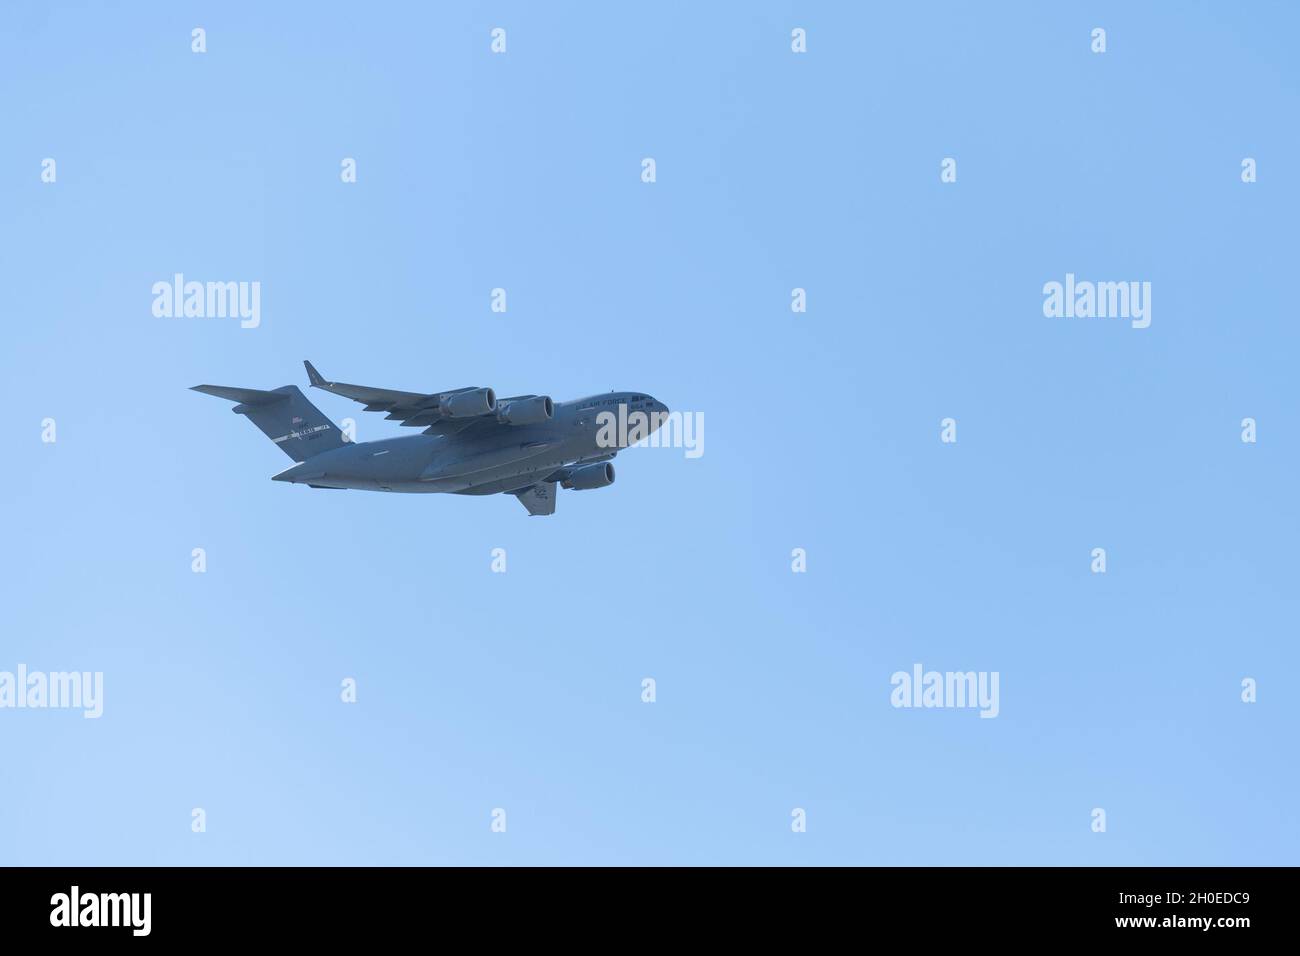 Ein C-17 Globemaster III fliegt über den Travis Air Force Base, Kalifornien, 10. Februar 2021. Das Flugzeug wird von einer dreiköpfigen Besatzung betrieben – einem Piloten, einem Co-Piloten und einem Laderaum, was den Personalbedarf, die Risikoaussetzung und die langfristigen Betriebskosten reduziert. Stockfoto